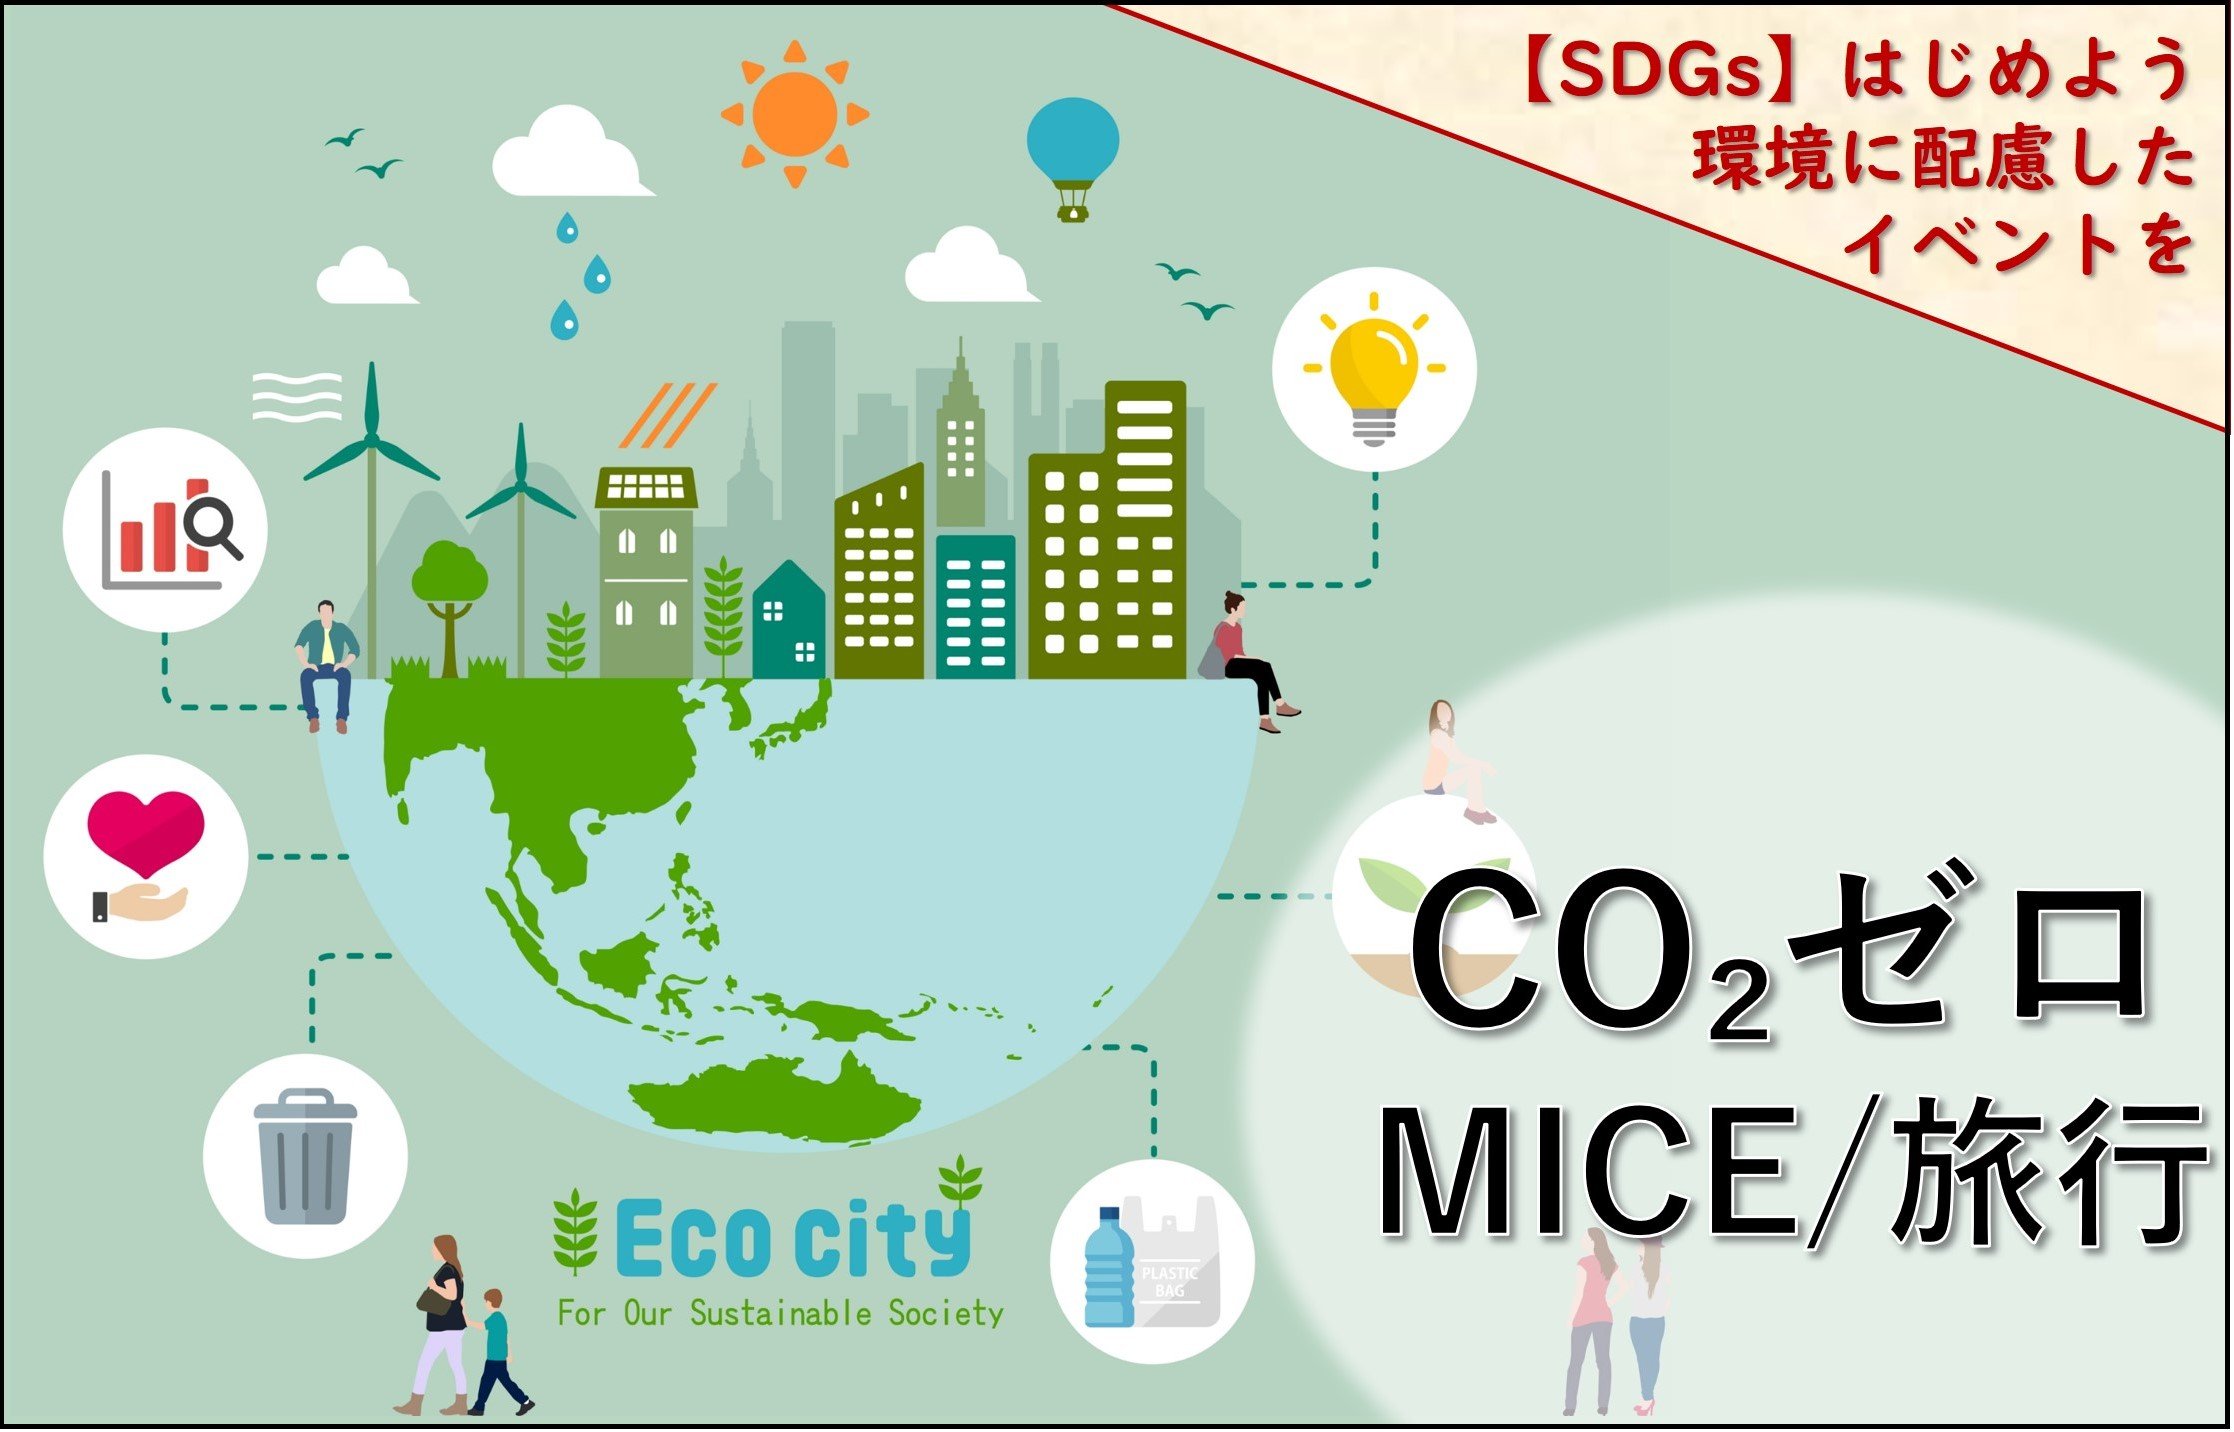 企業の環境対策やSDGsの取り組み支援「CO₂ゼロMICE/旅行」